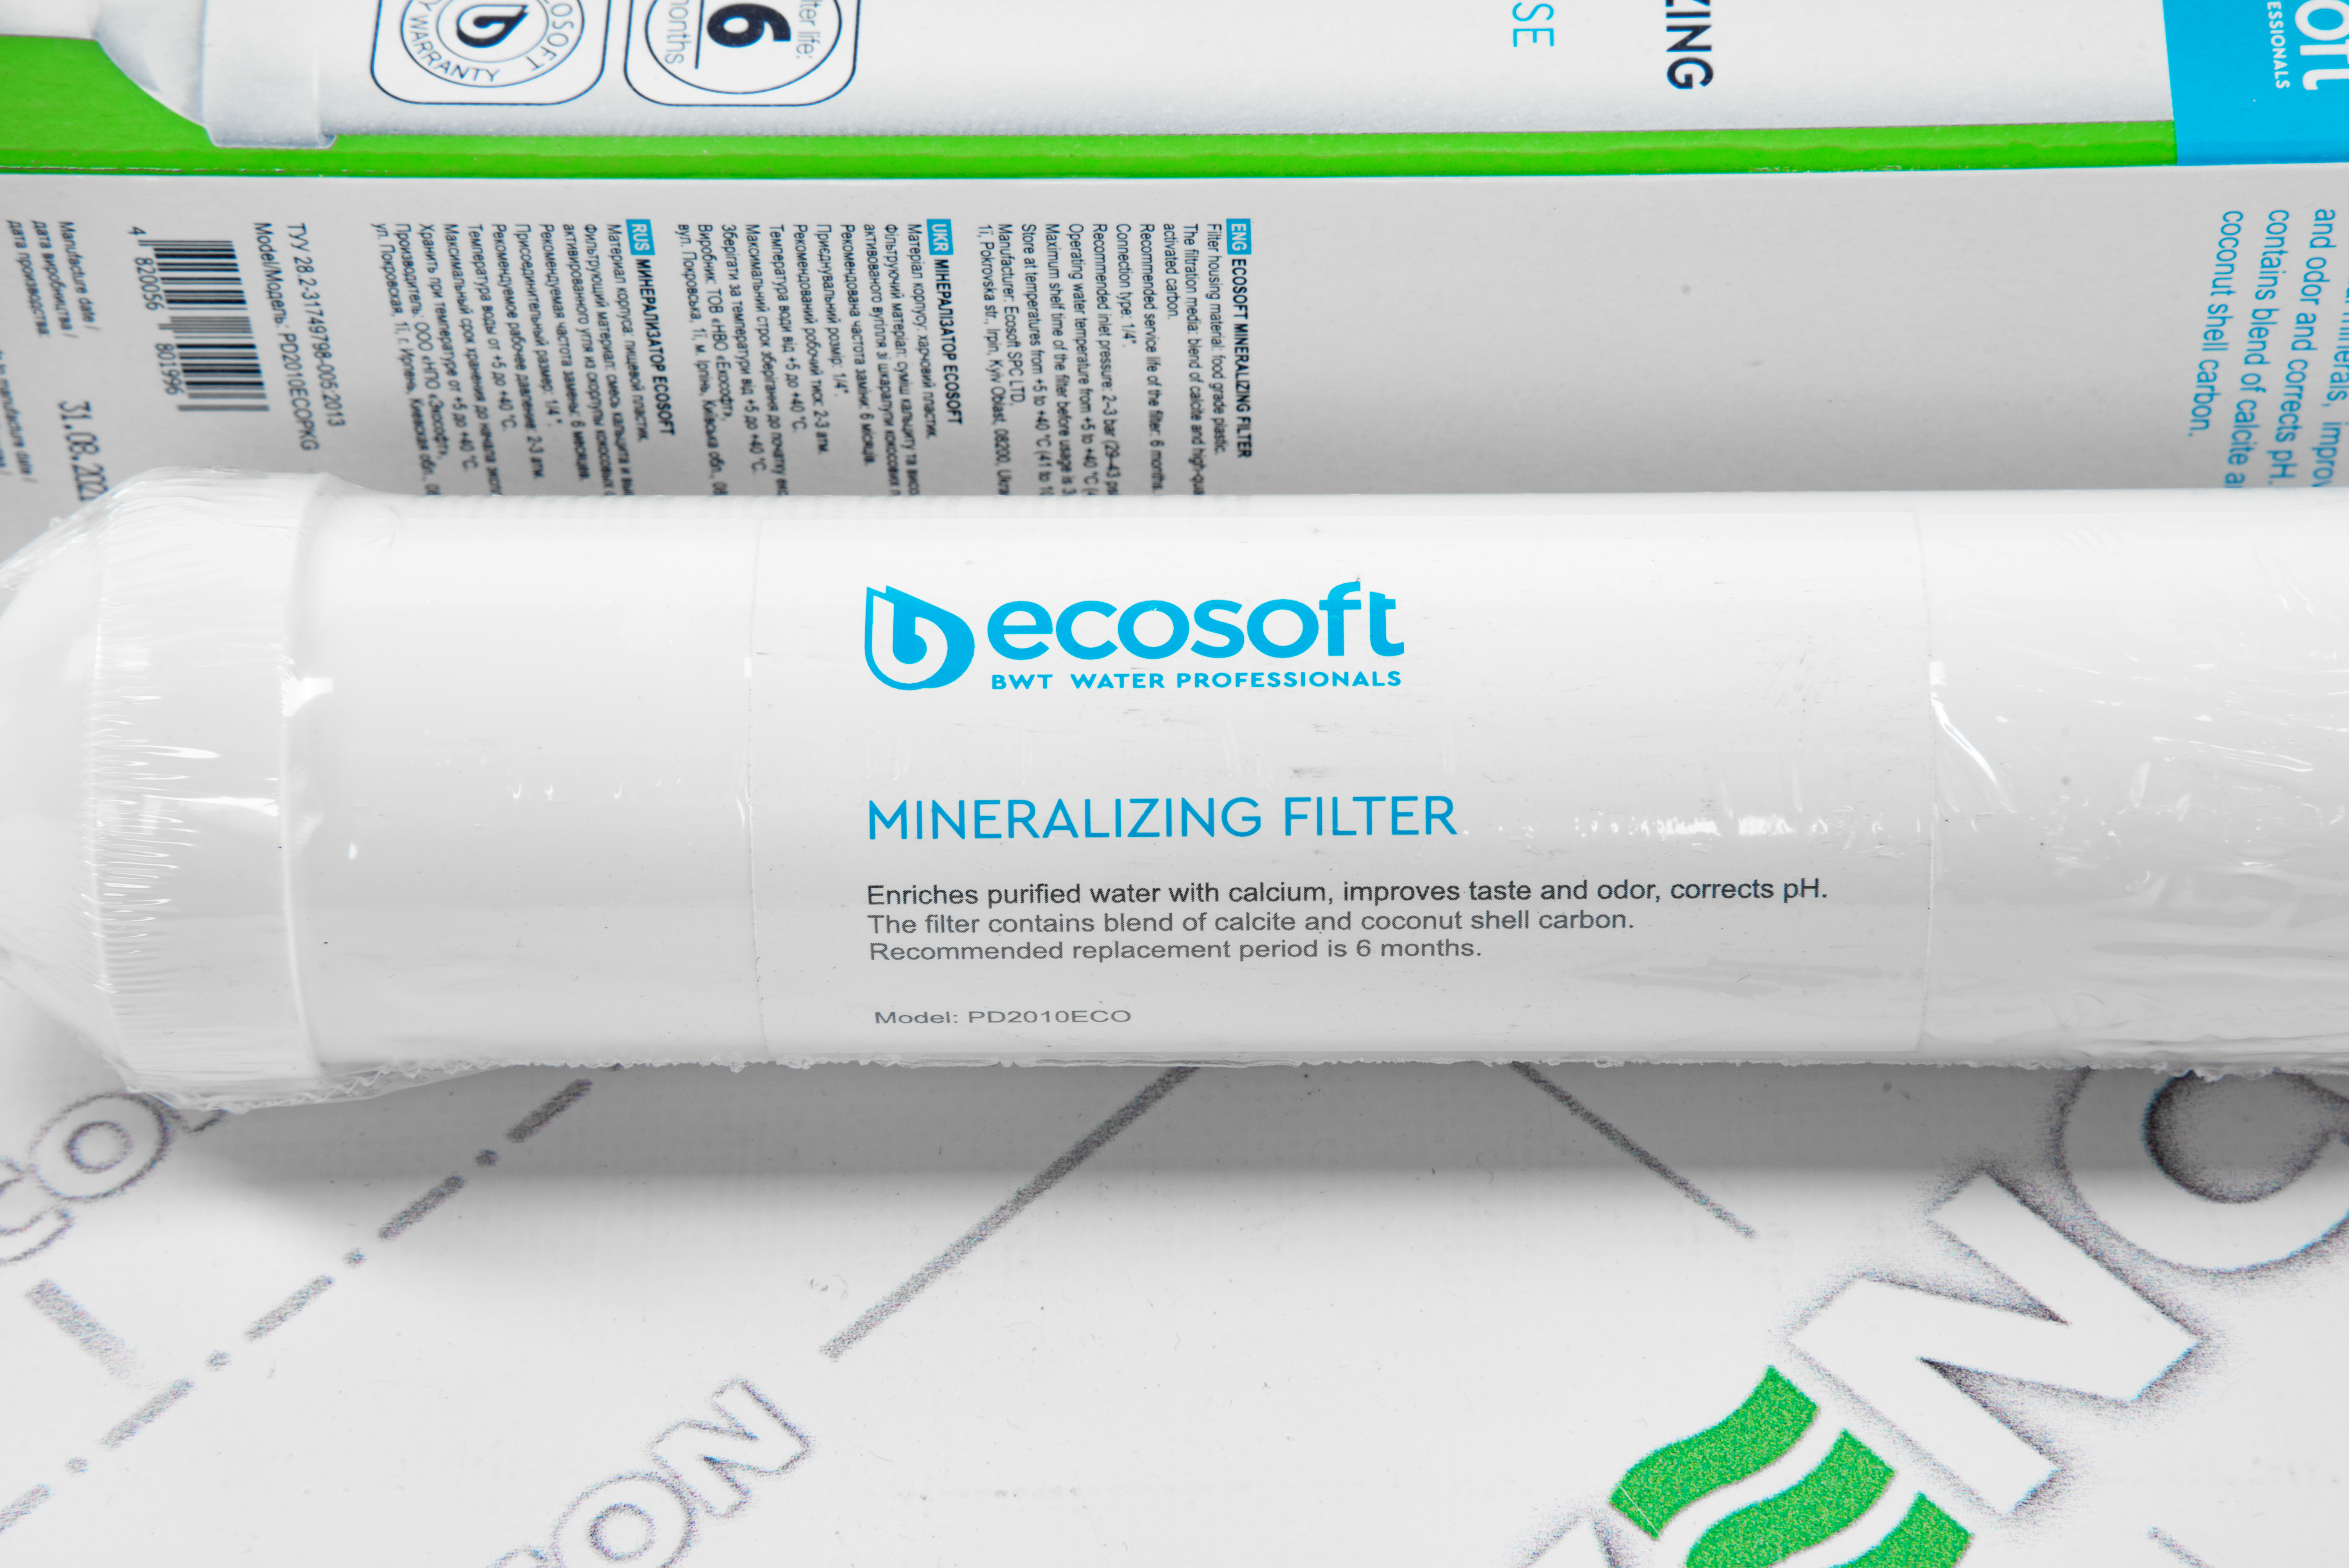 продаём Ecosoft 2"х10" PD2010ECOPKG (минерализатор)  в Украине - фото 4